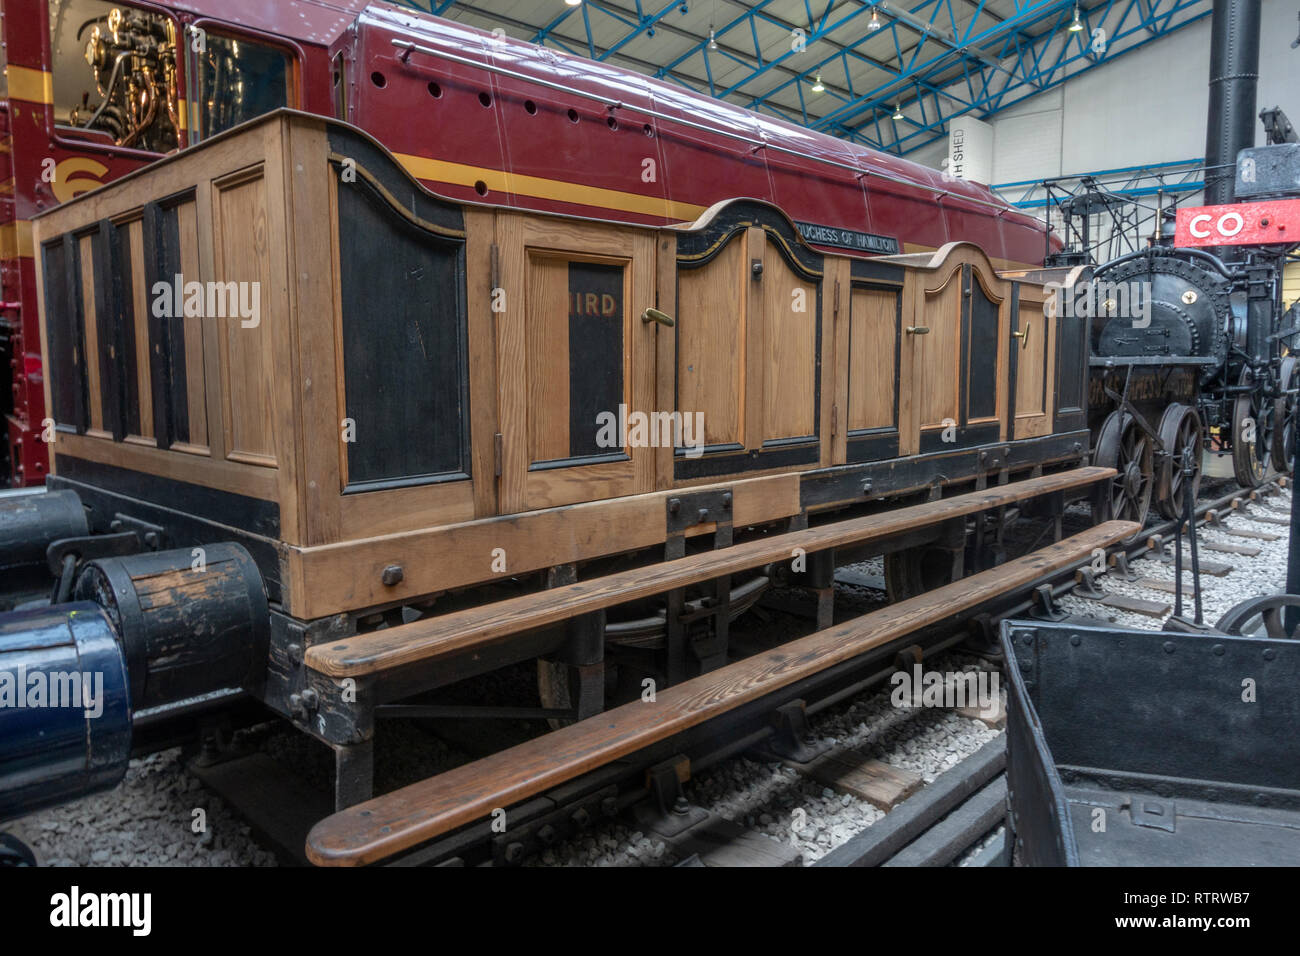 Bodmin & St Albans terza classe del carrello sul display nel museo nazionale delle ferrovie, York, UK. Foto Stock